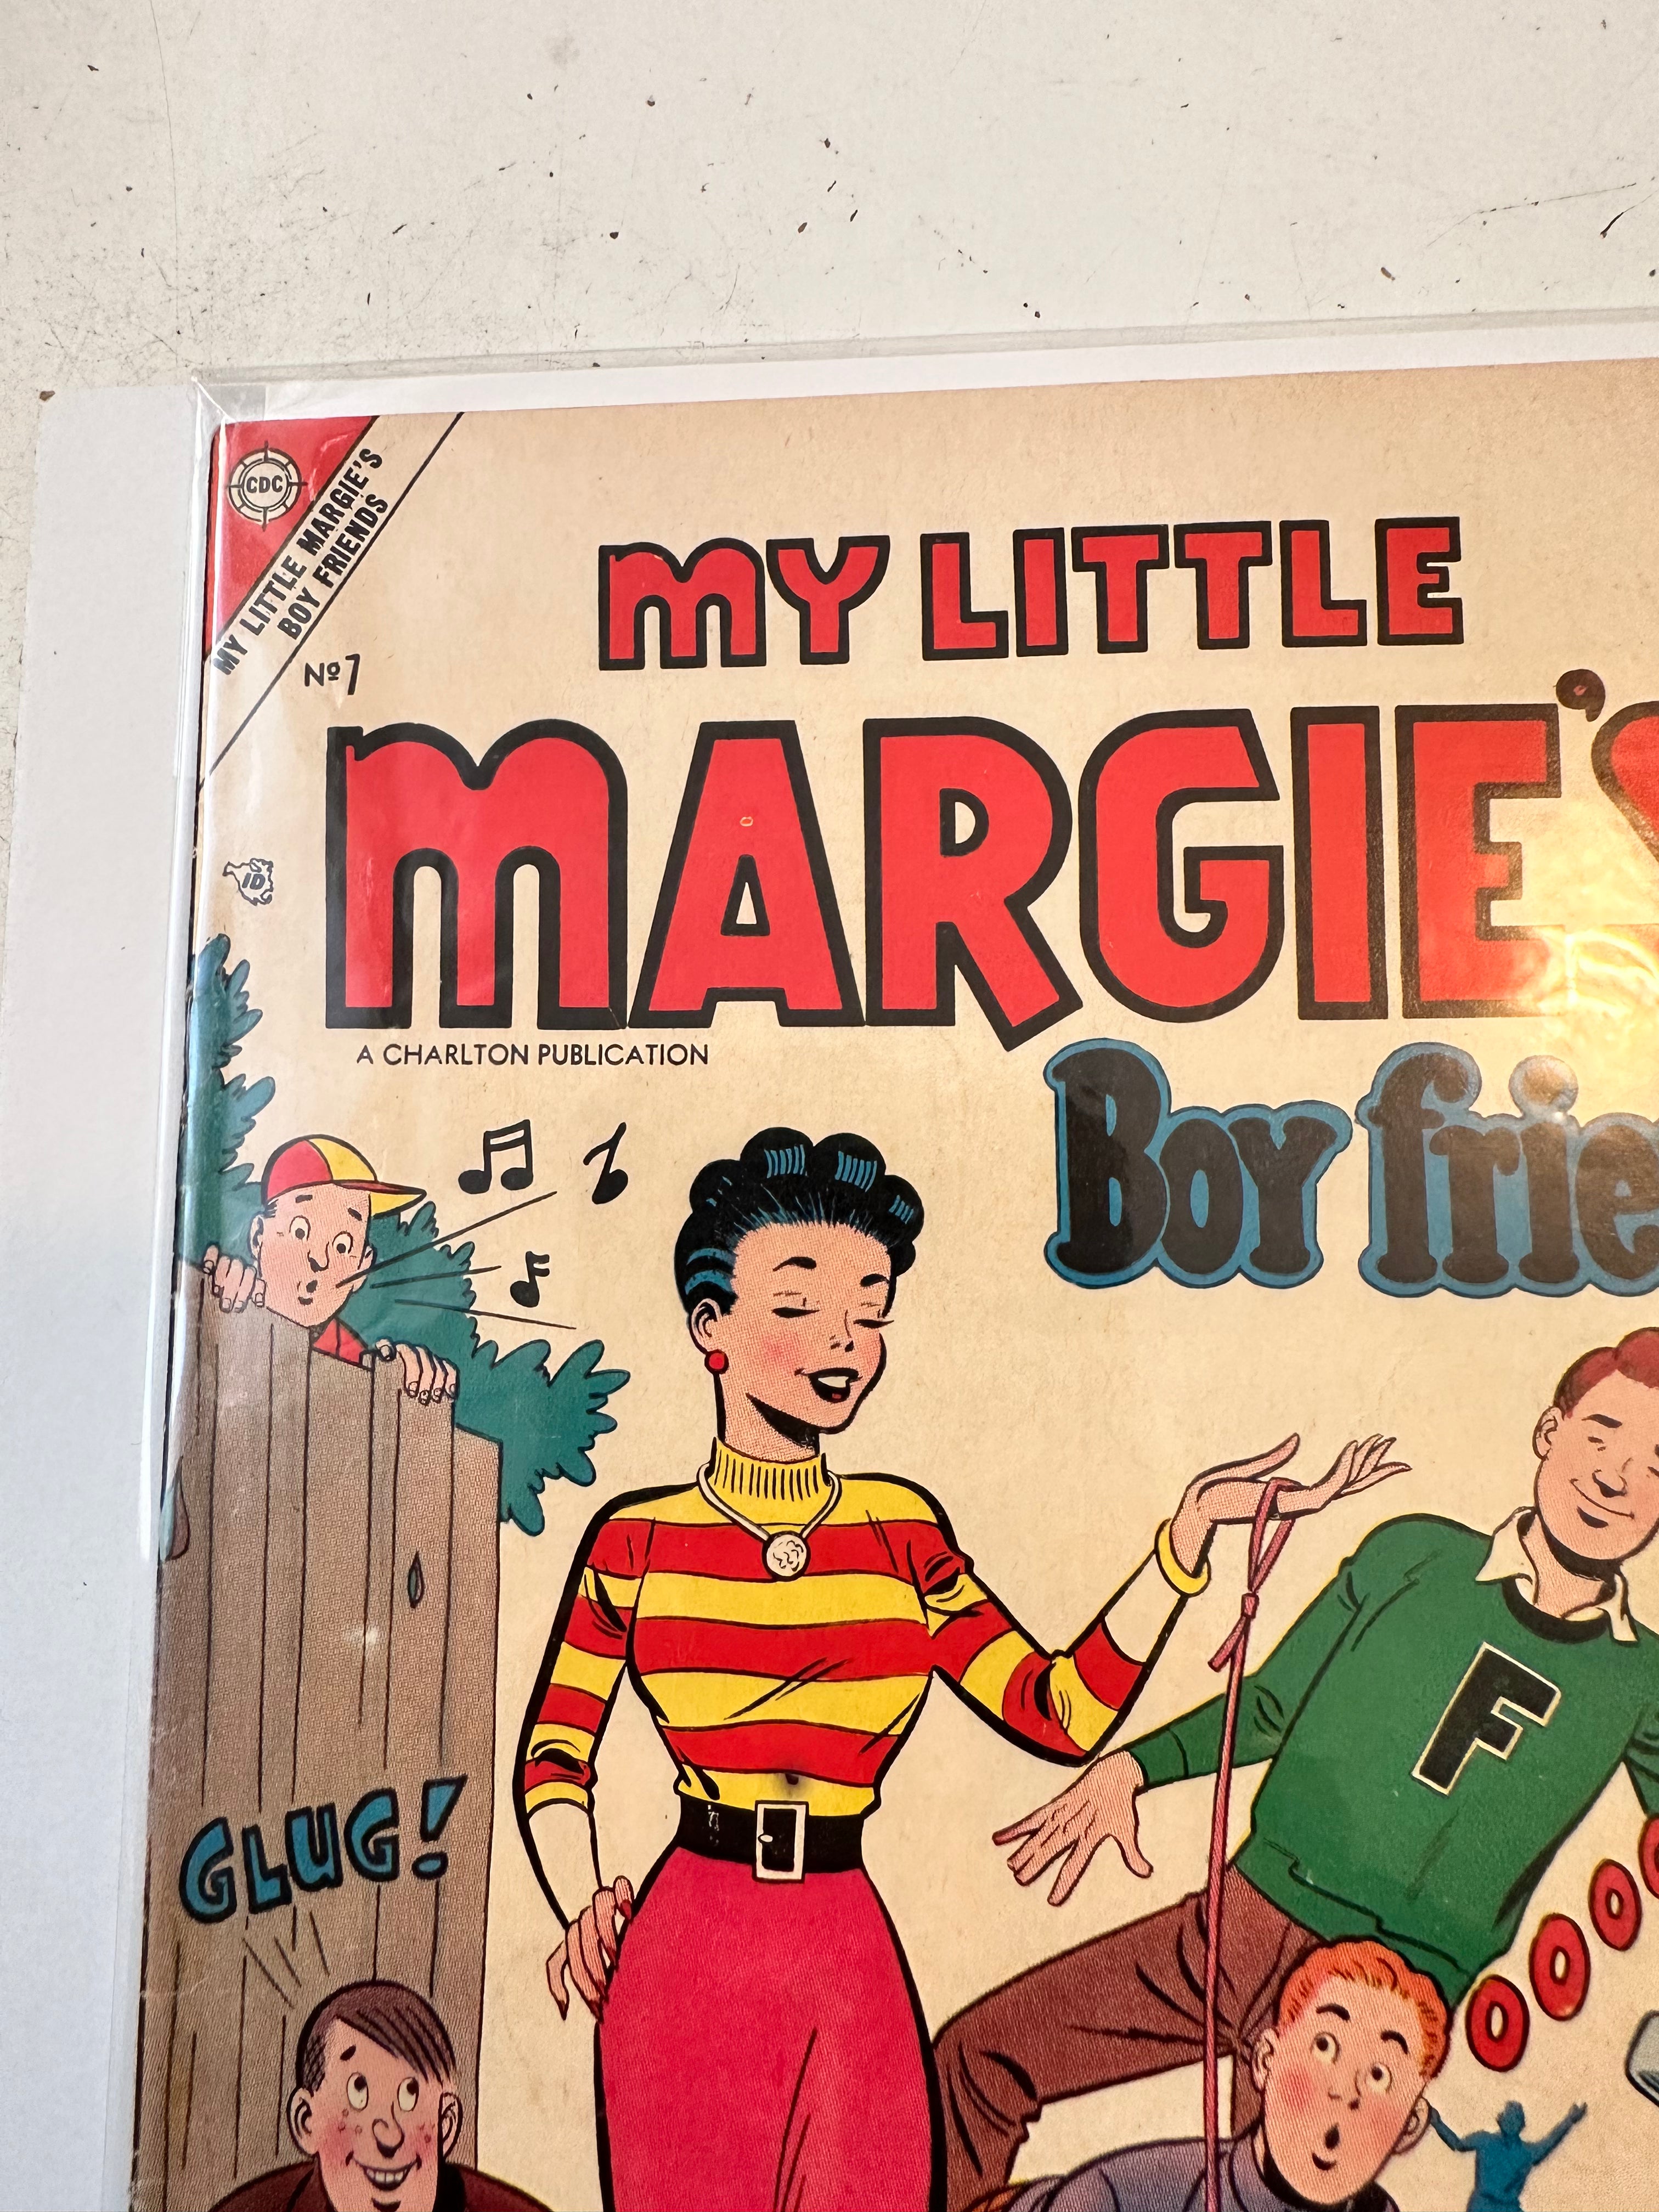 My Little Margie’s Boy Friends #7 comic 1955